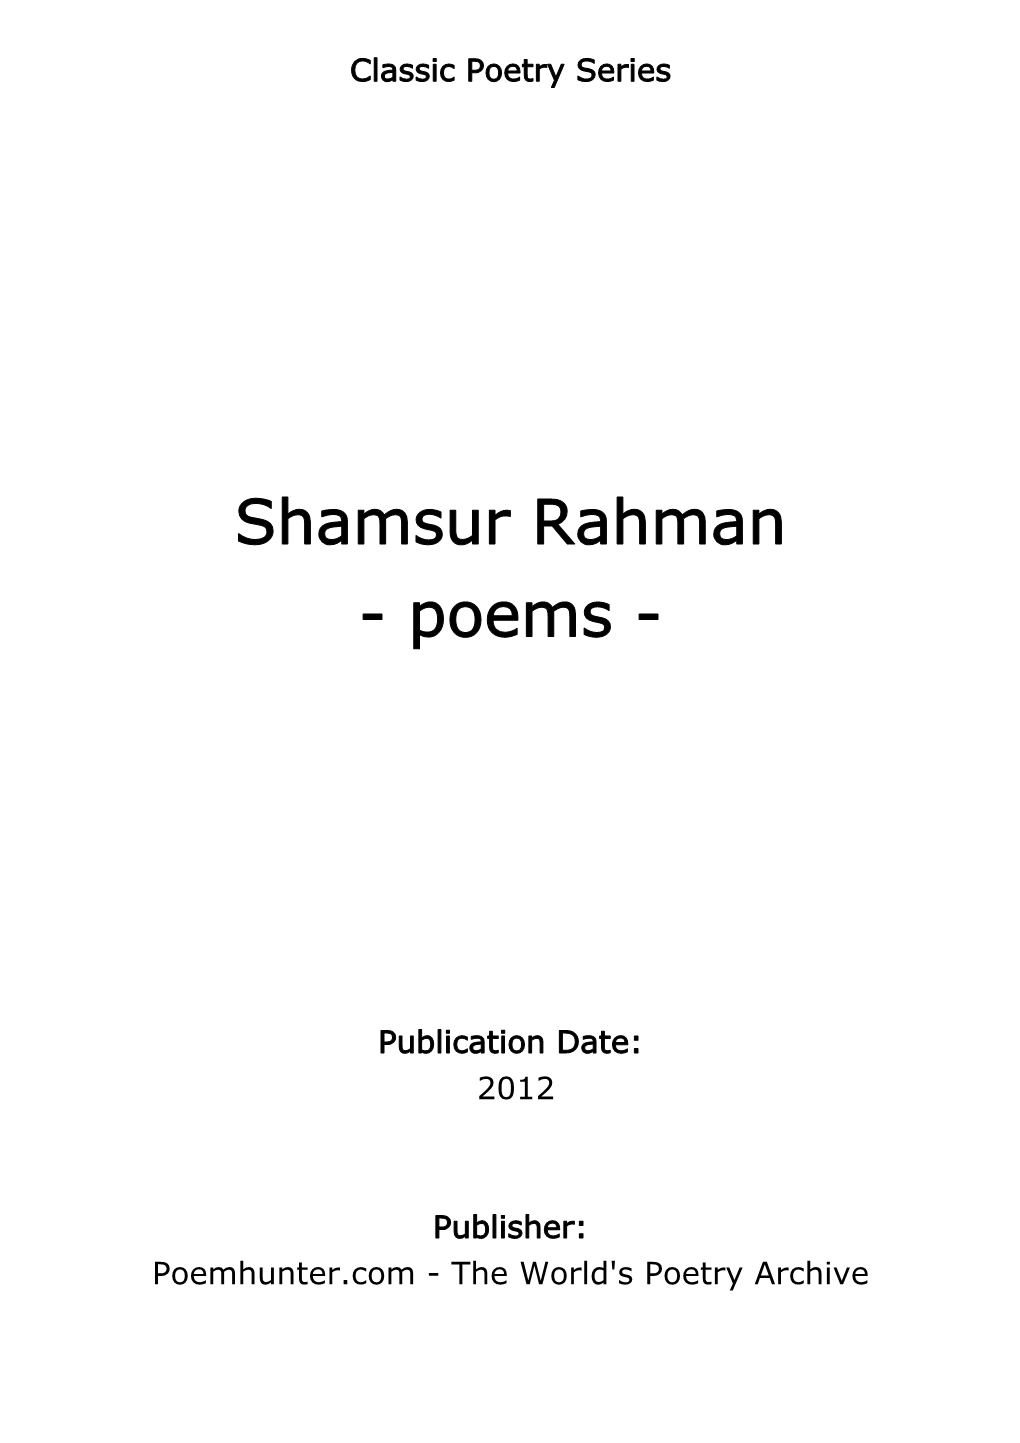 Shamsur Rahman - Poems